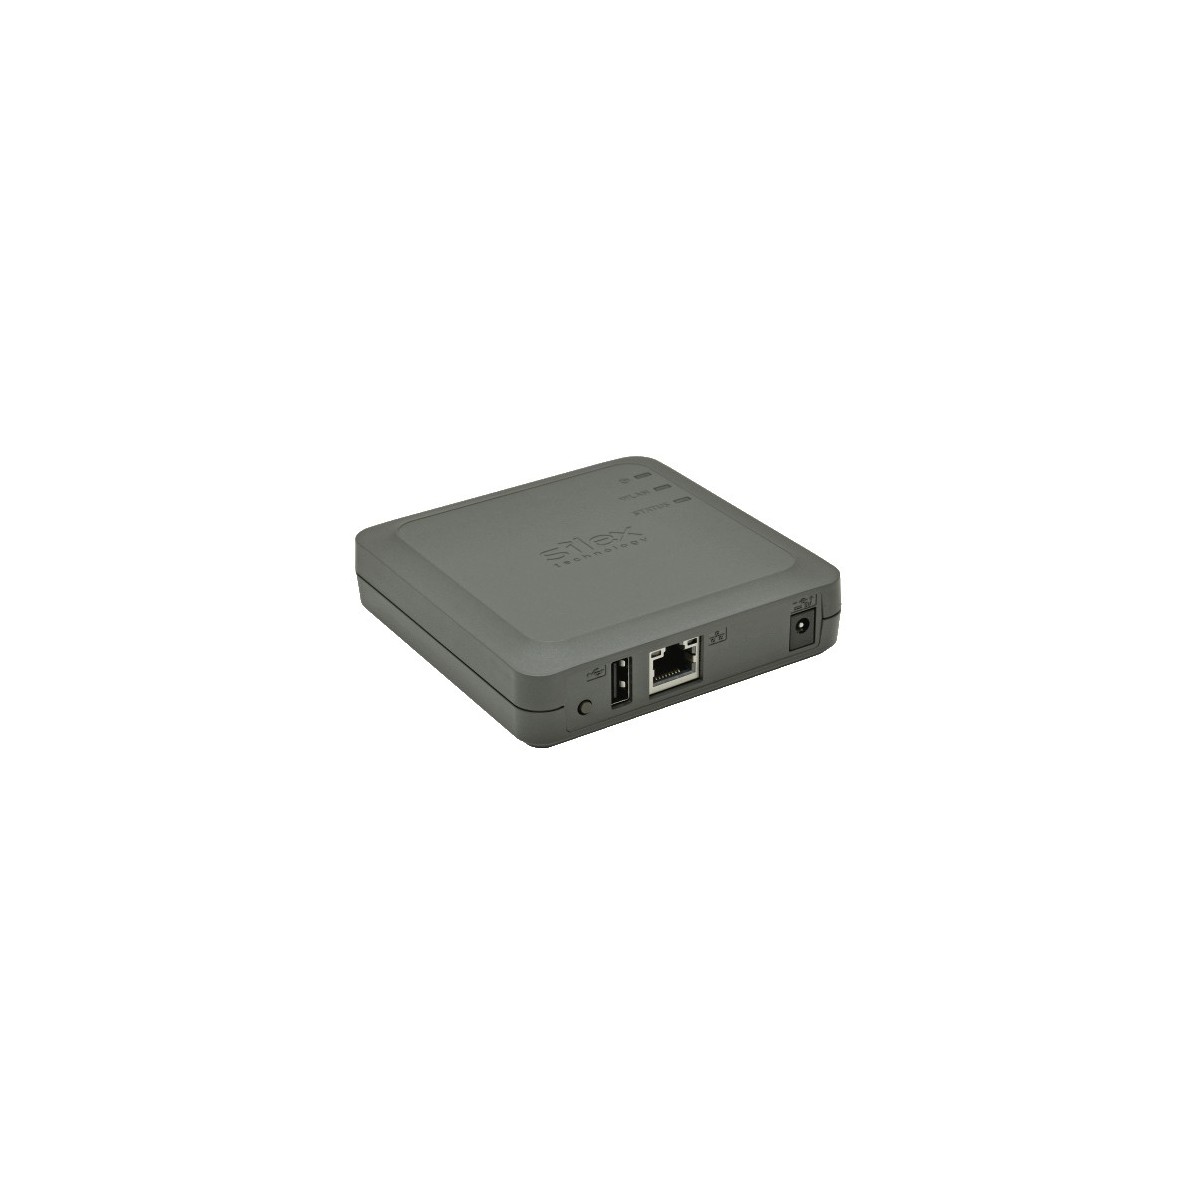 Silex DS-520AN - Grey - Ethernet LAN - IEEE 802.11a,IEEE 802.11b,IEEE 802.11g,IEEE 802.11h - Dual-band (2.4 GHz - 5 GHz) - 64-bi